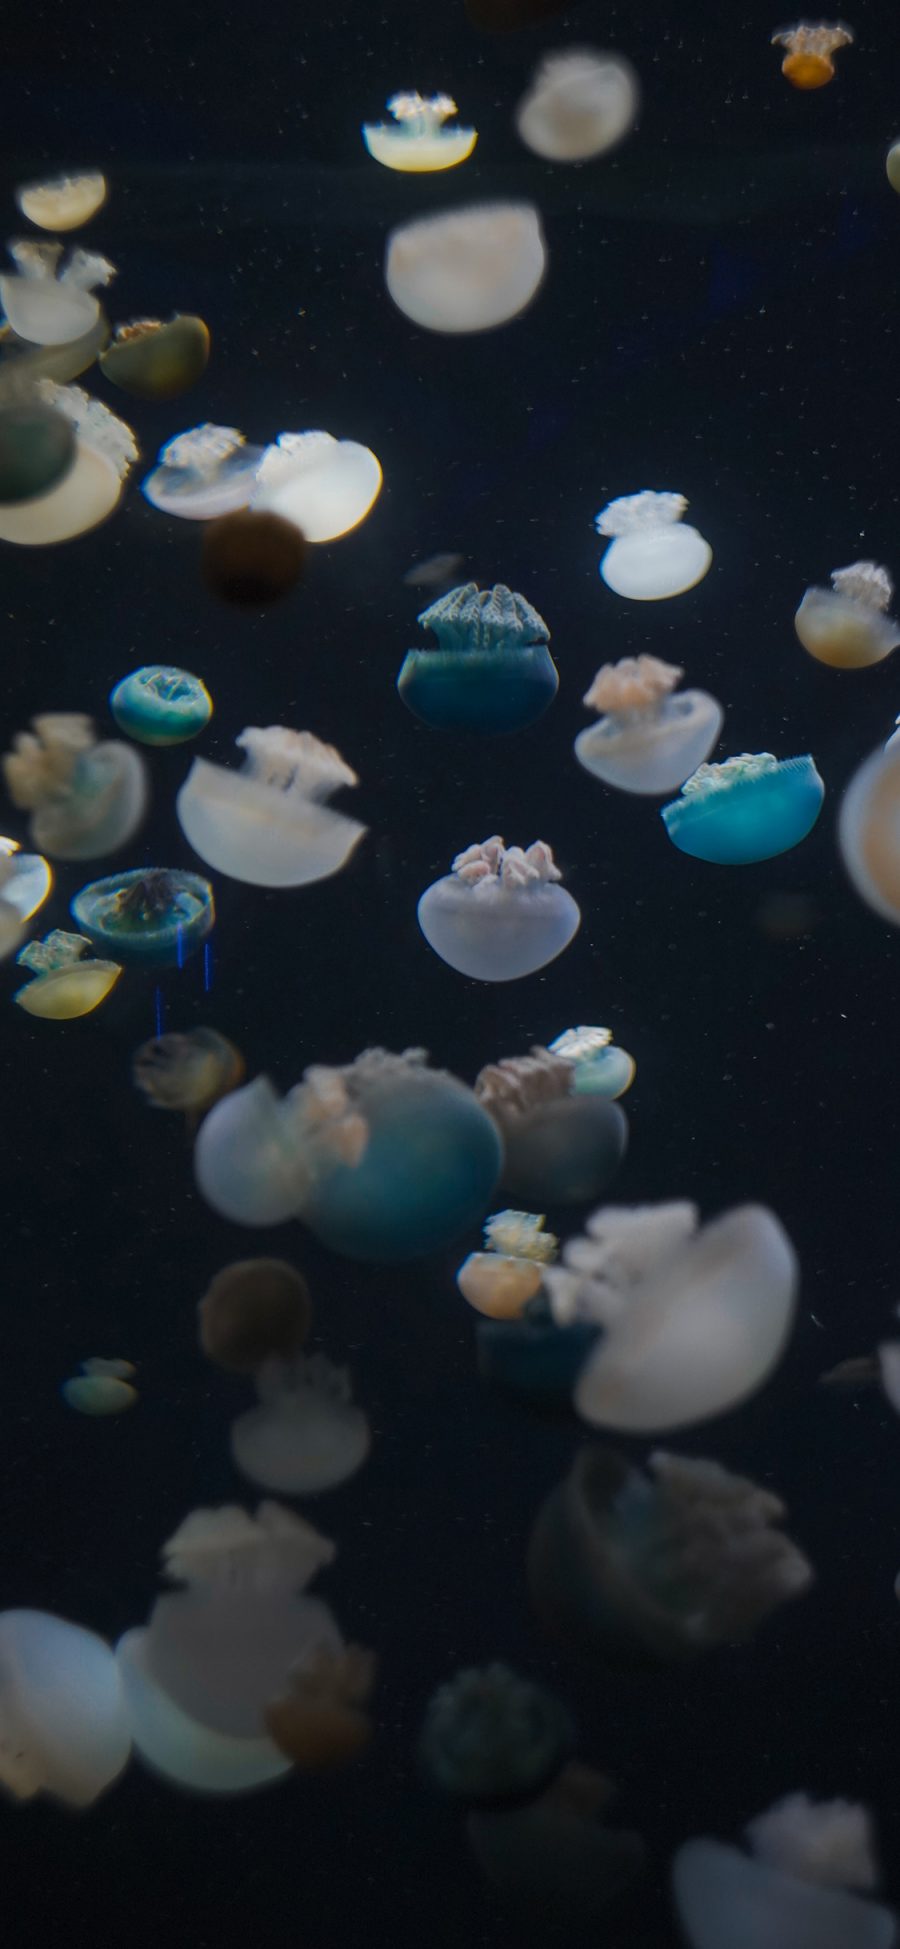 [2436×1125]水母 群体 浮游 触手 苹果手机壁纸图片